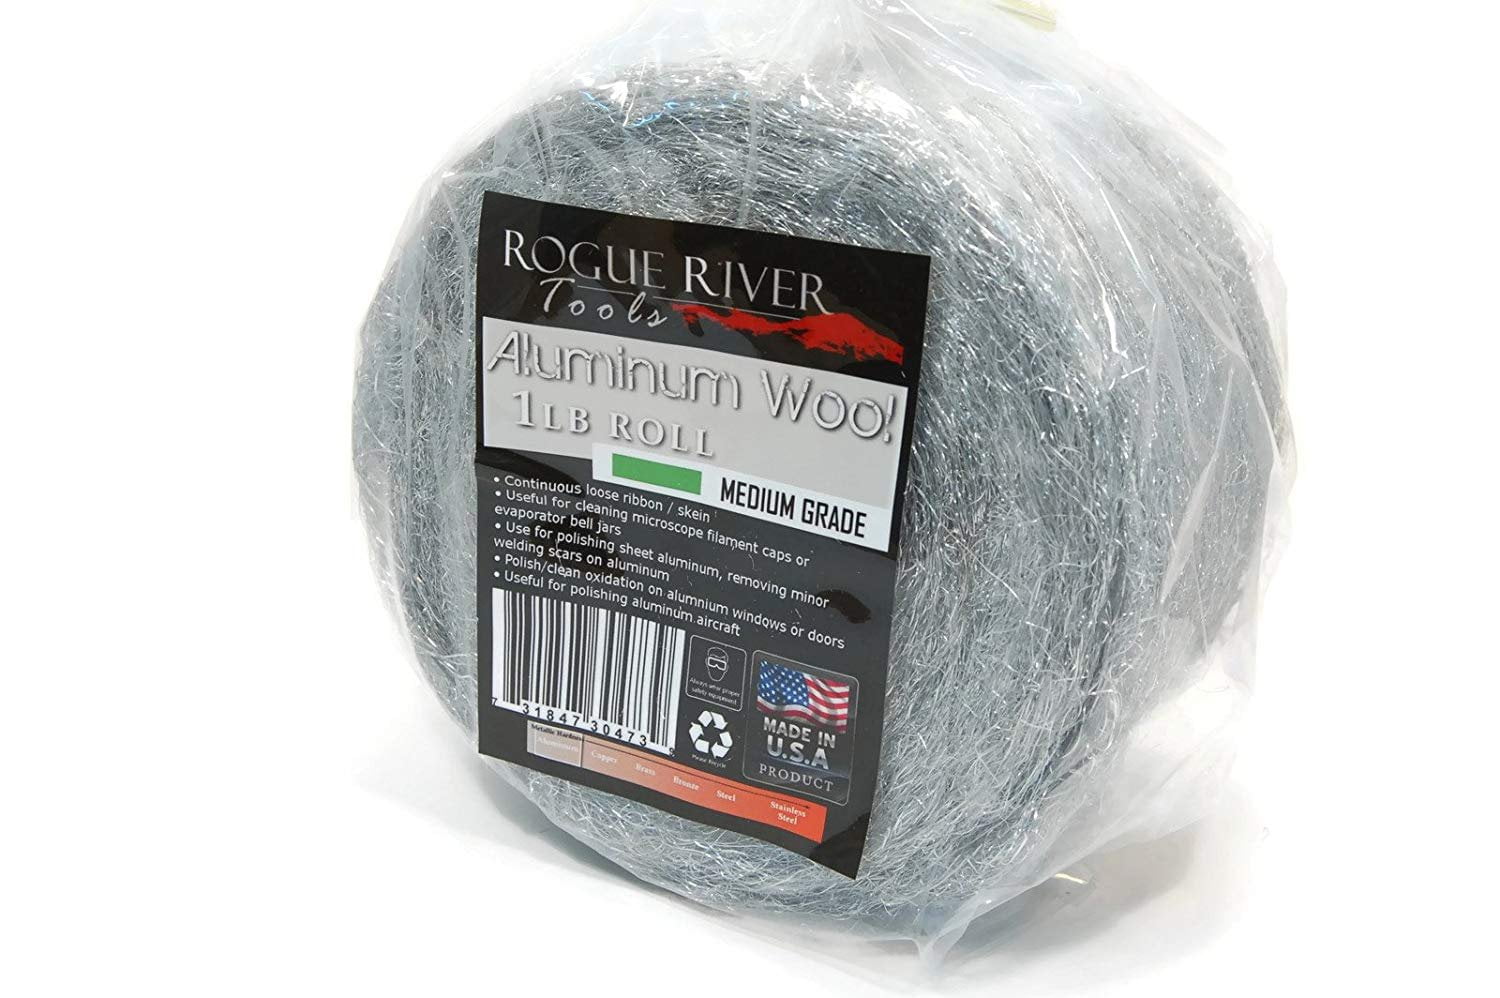 Coarse Grade Aluminum Wool Roll by Rogue River Tools 1lb 